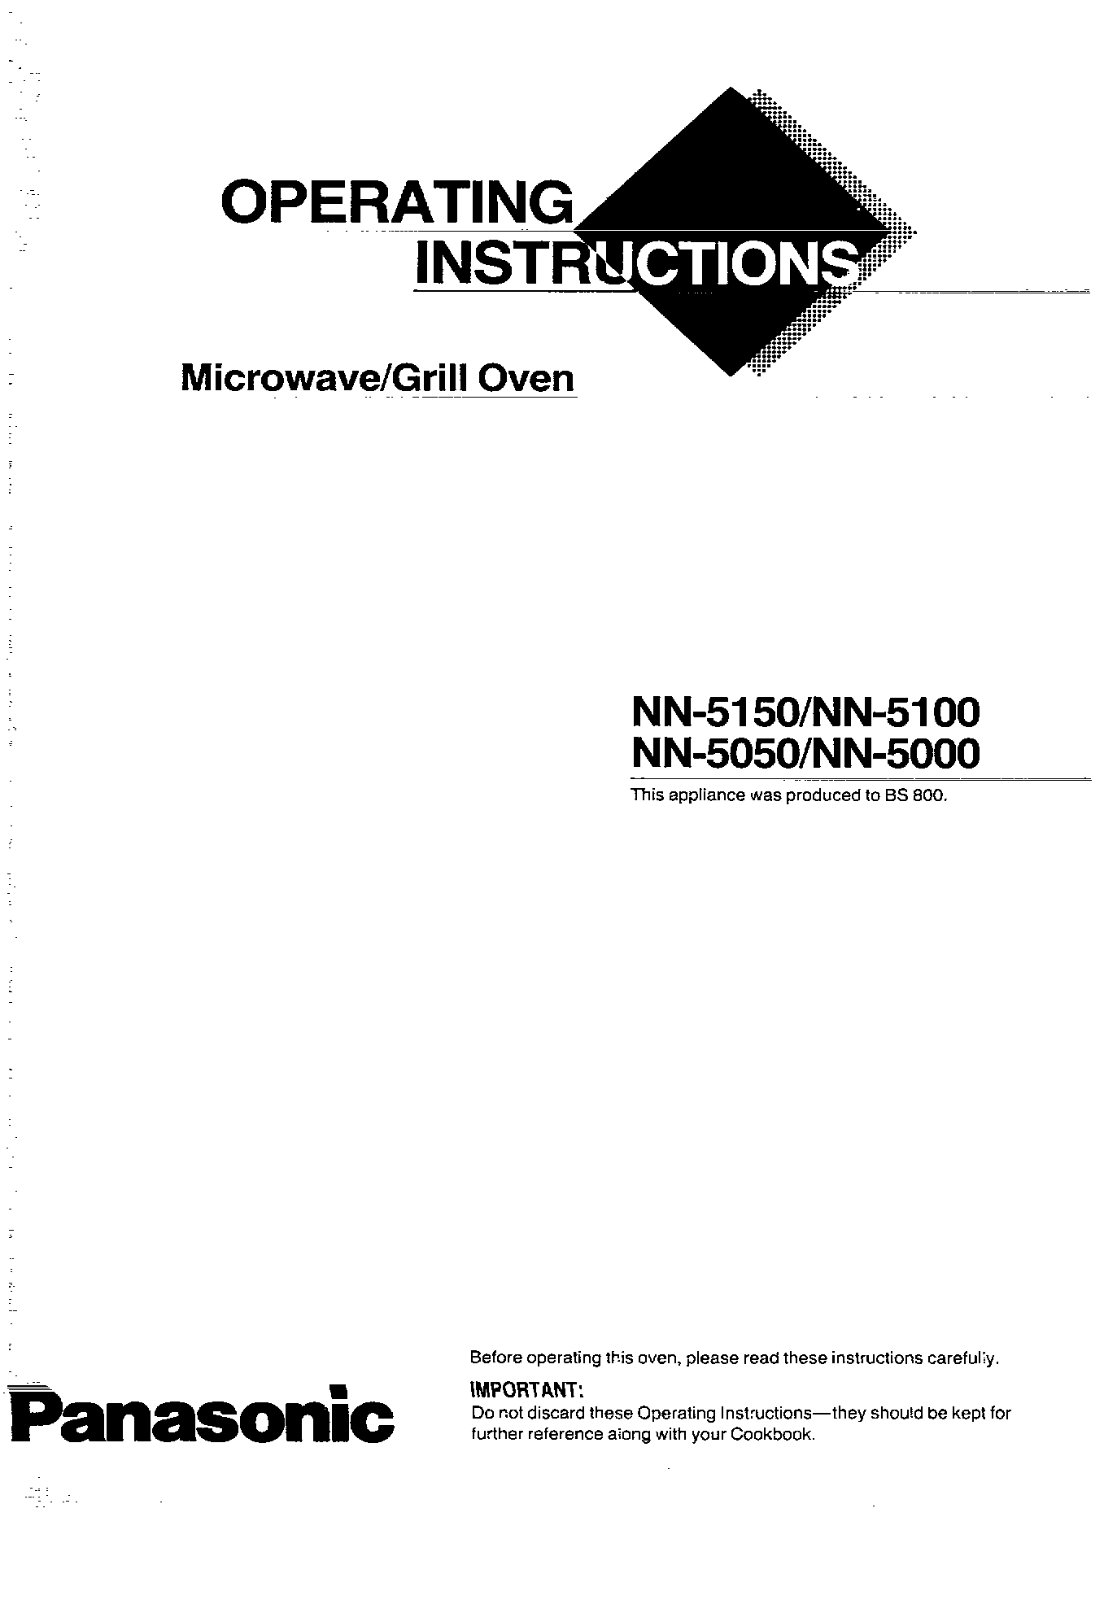 Panasonic NN-5100, NN-5050, NN-5150, NN-5000 User Manual